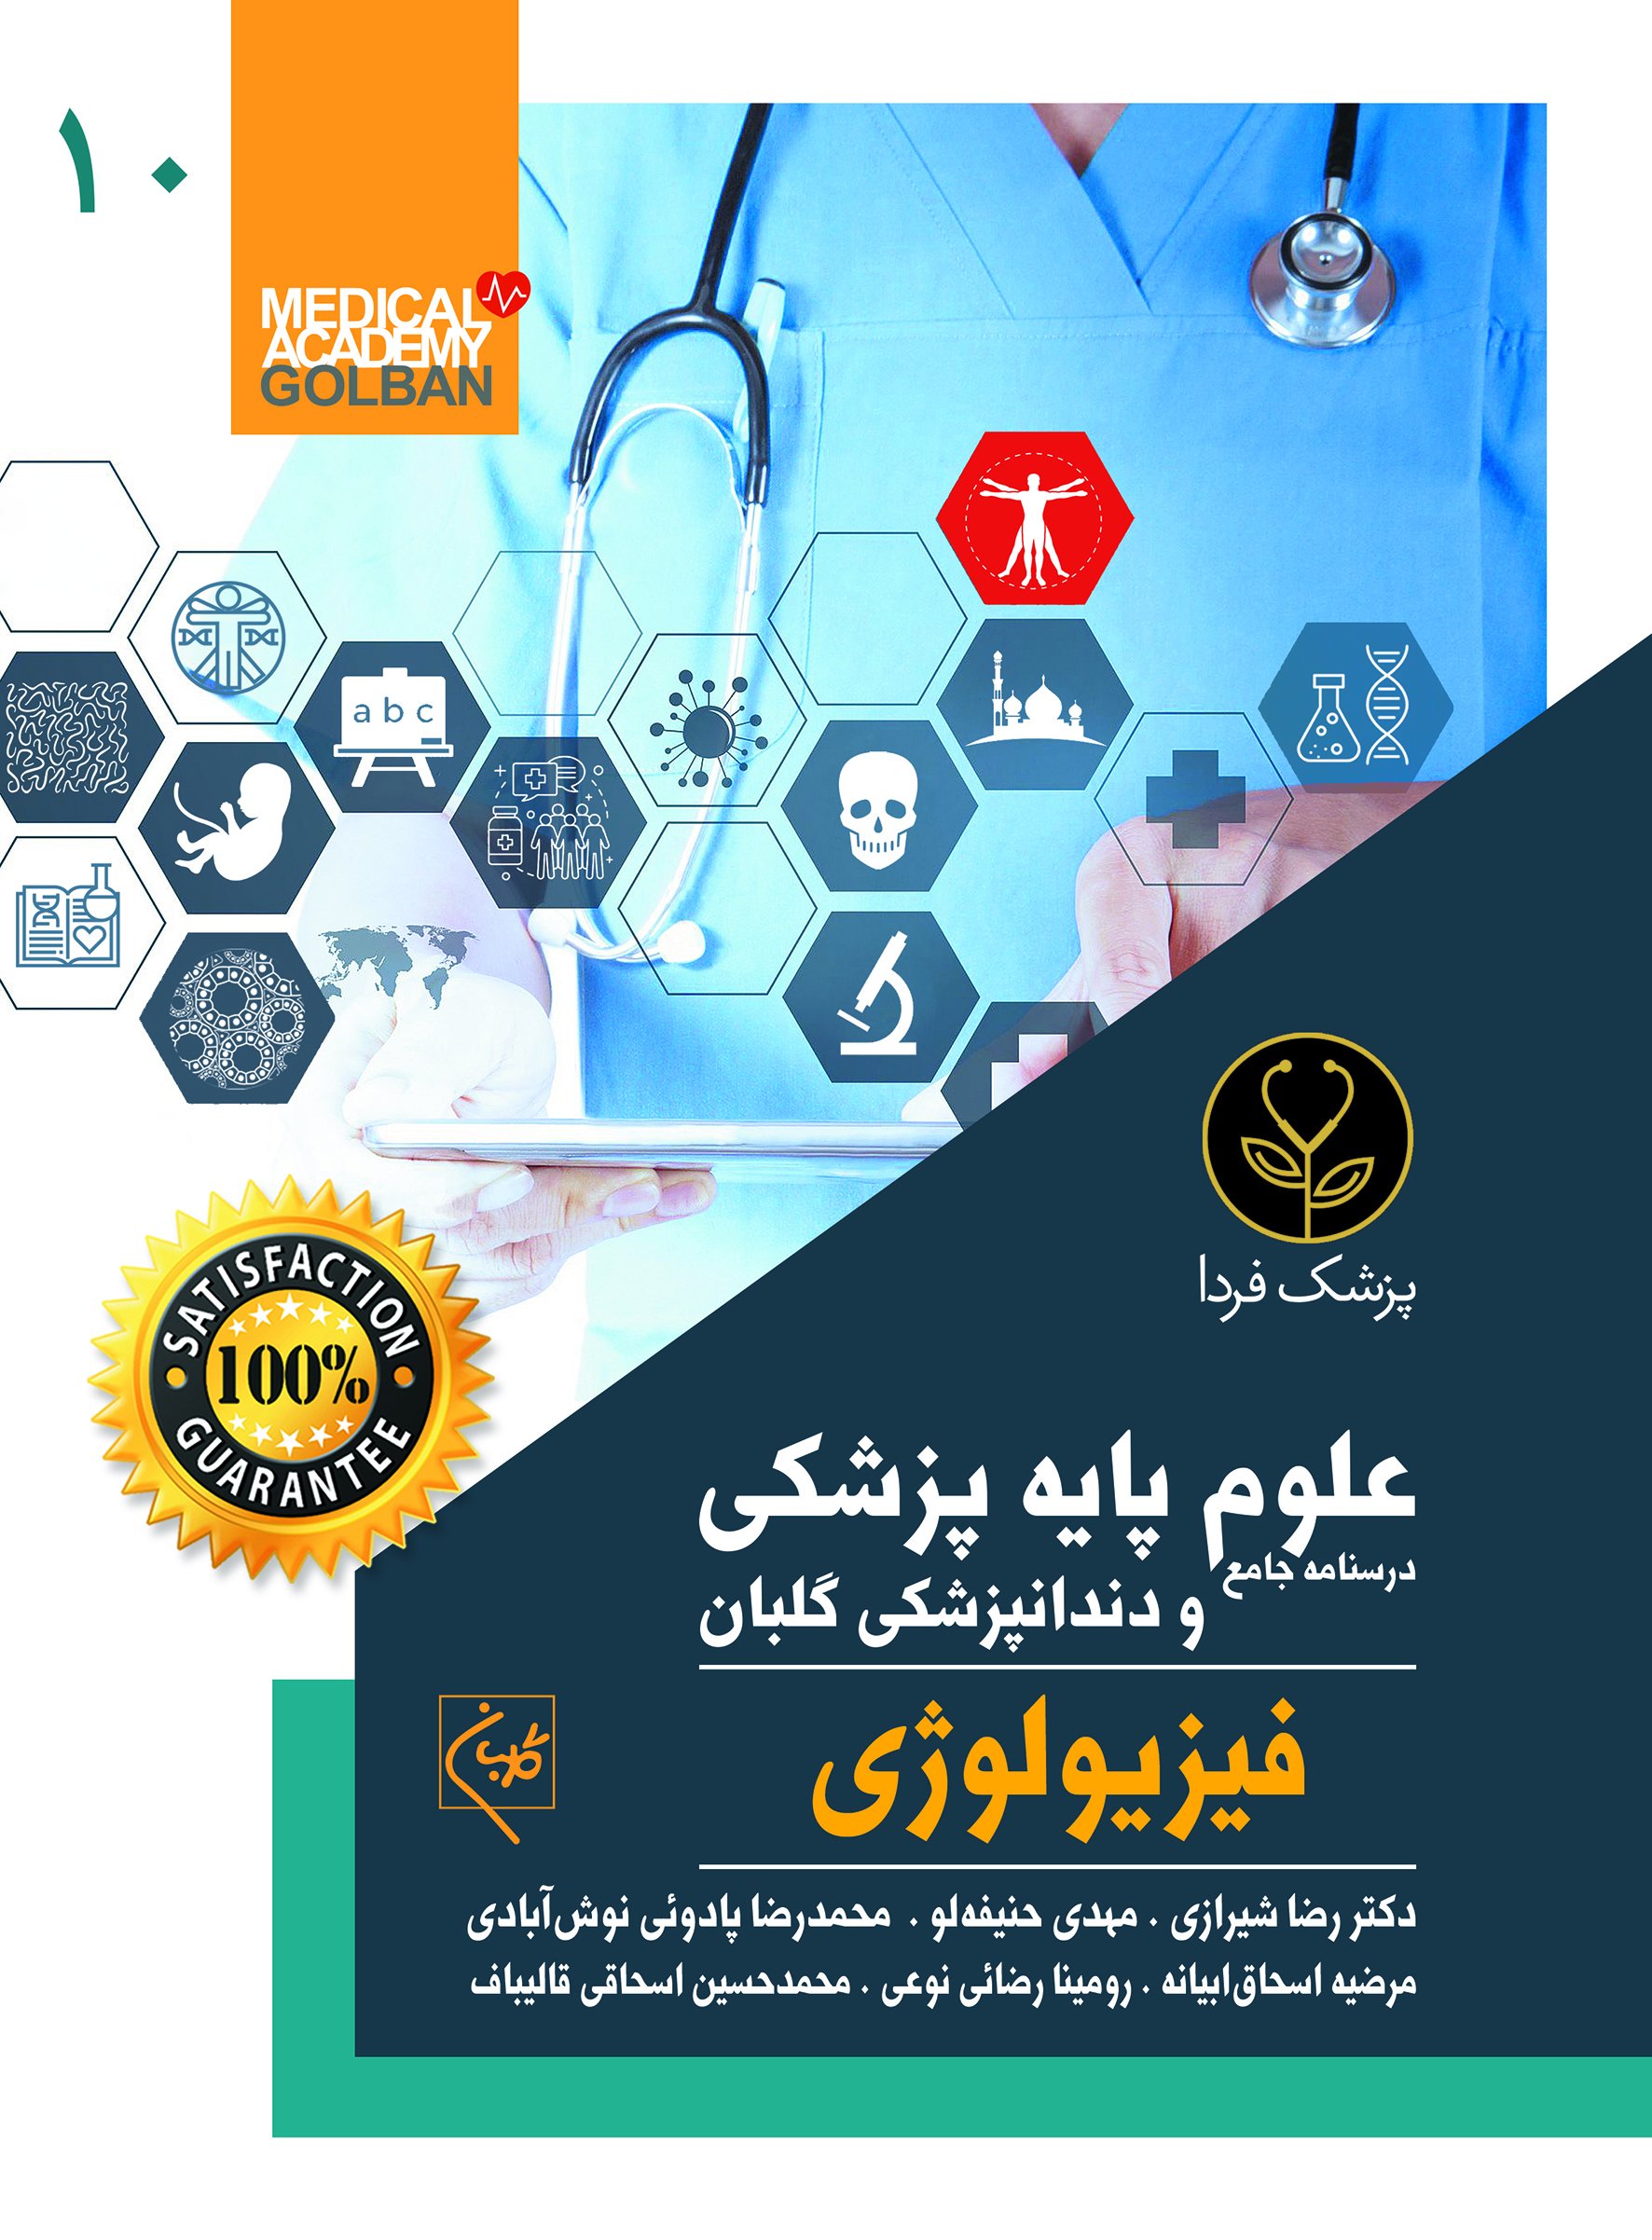 درسنامه جامع علوم پایه پزشکی و دندانپزشکی فیزیولوژی(10)